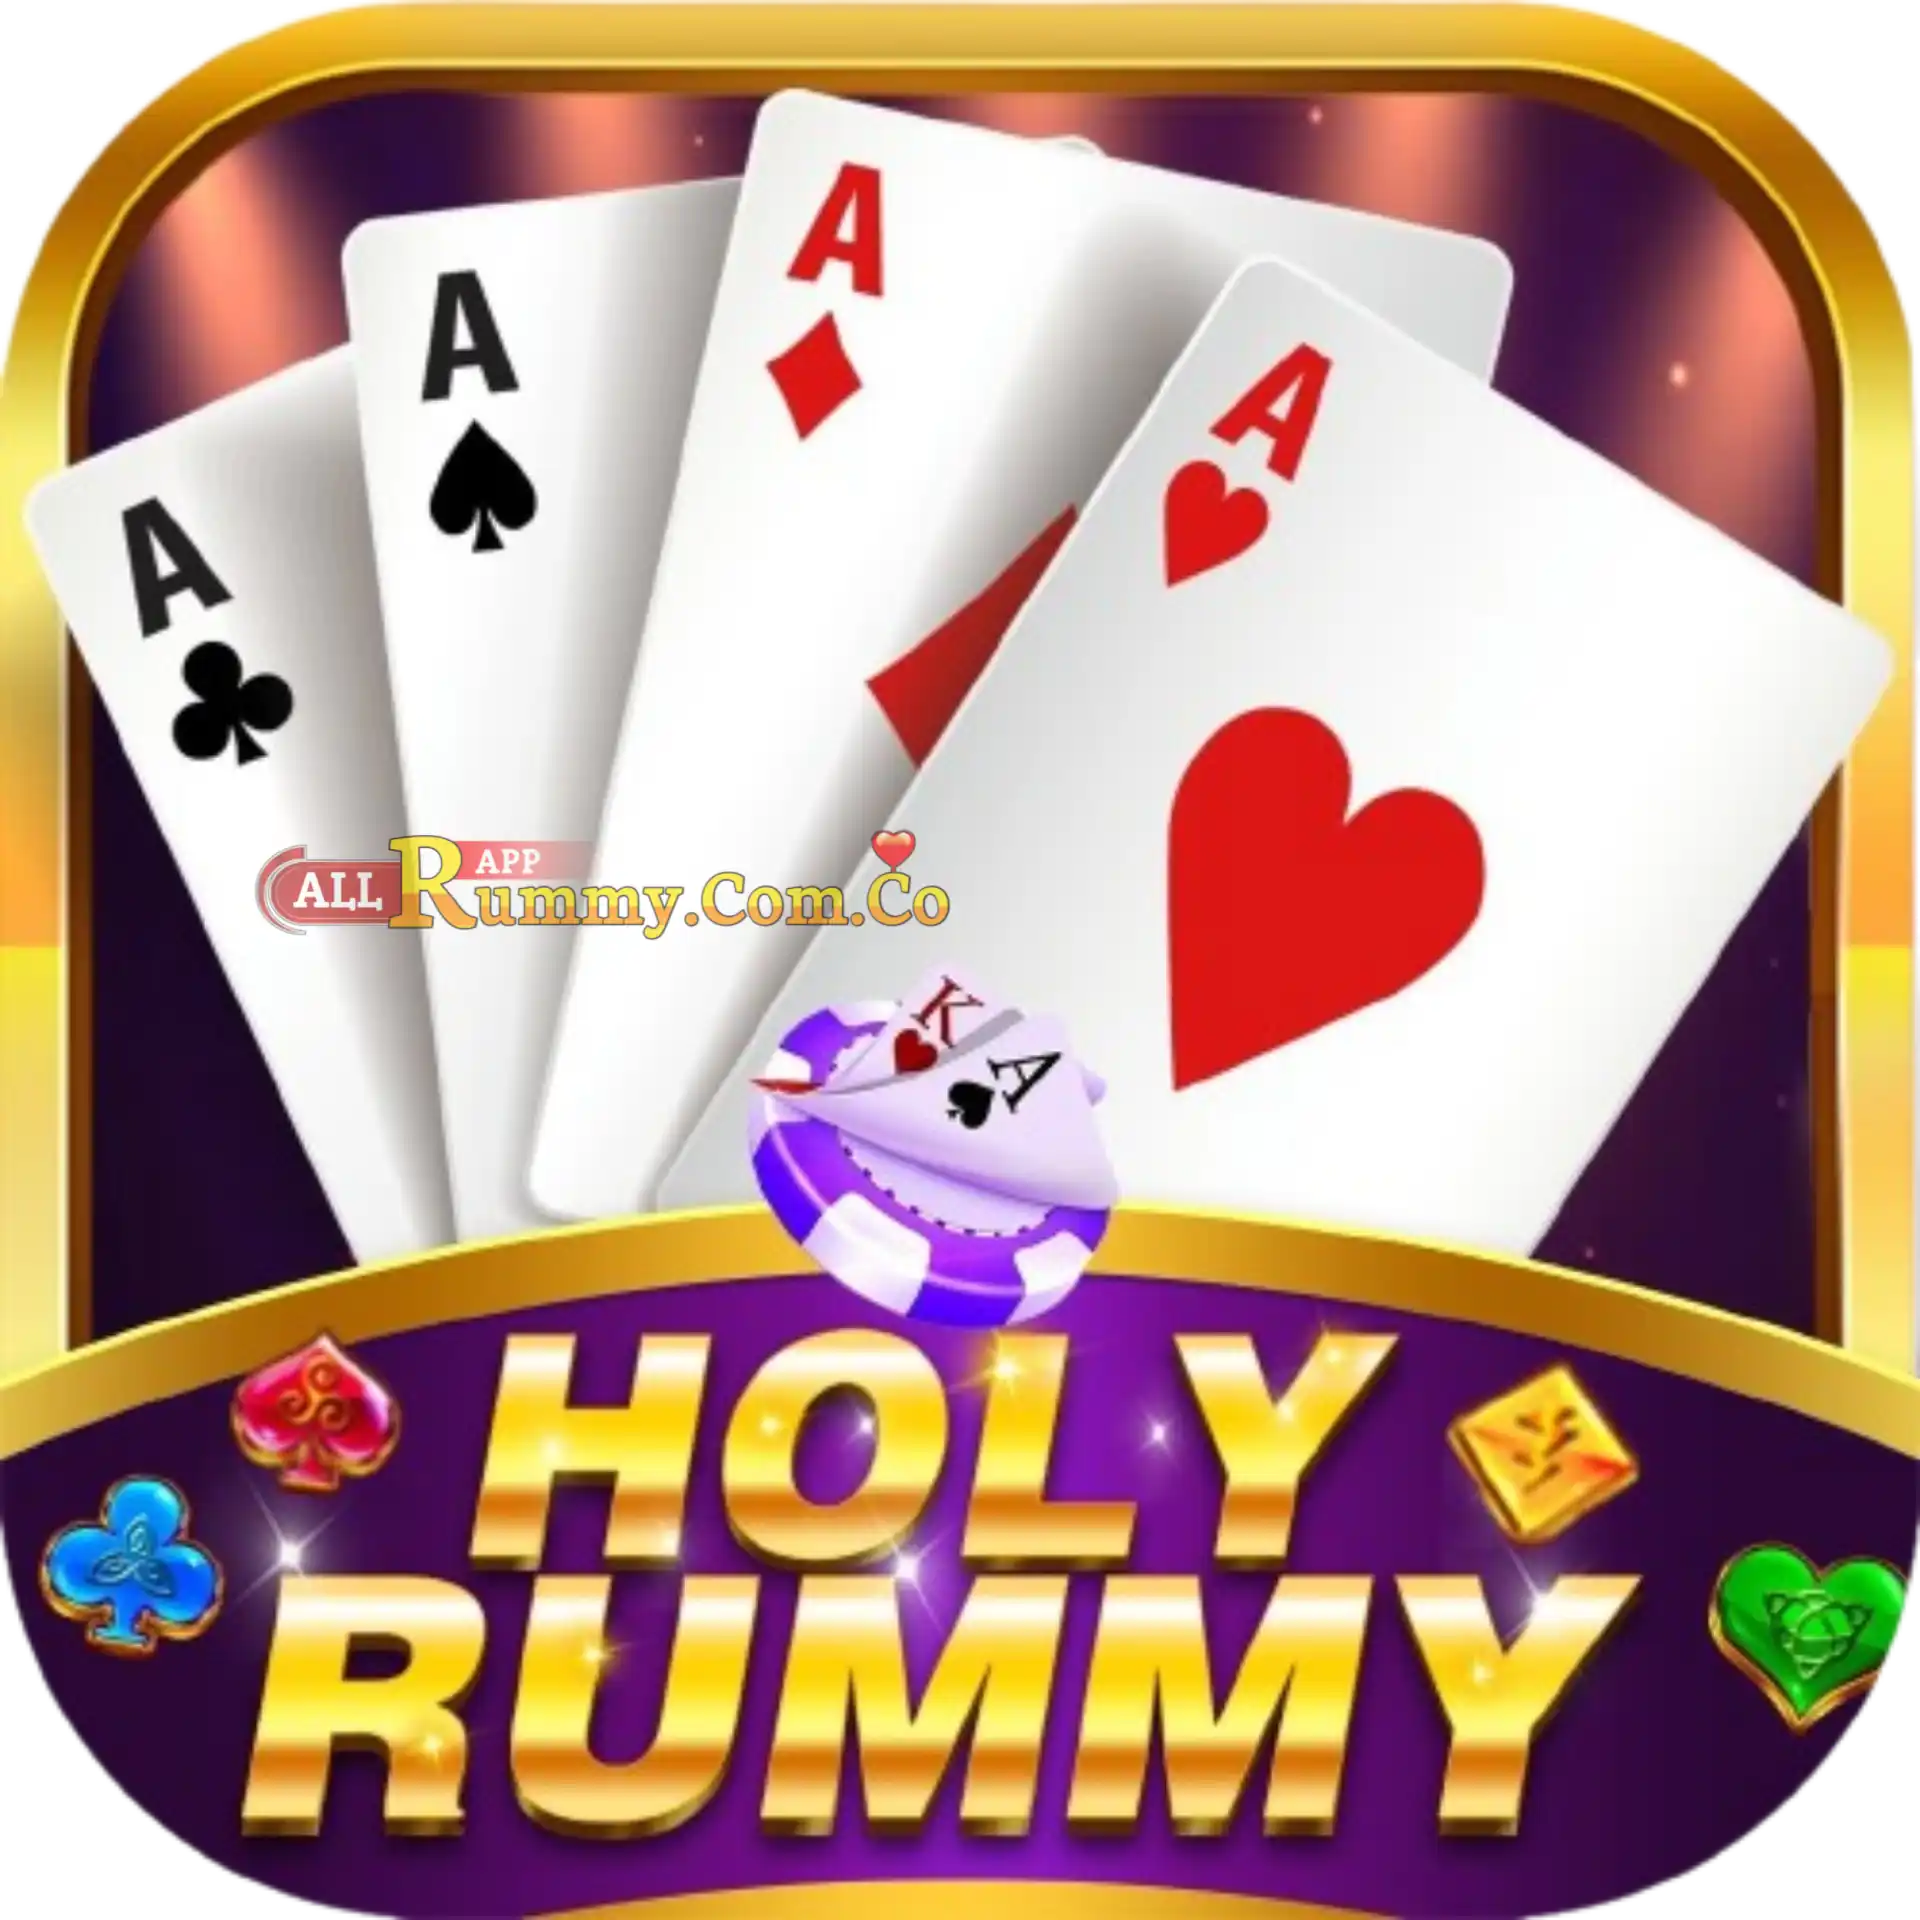 Holy Rummy  - All Rummy App - All Rummy Apps - RummyBonusApp